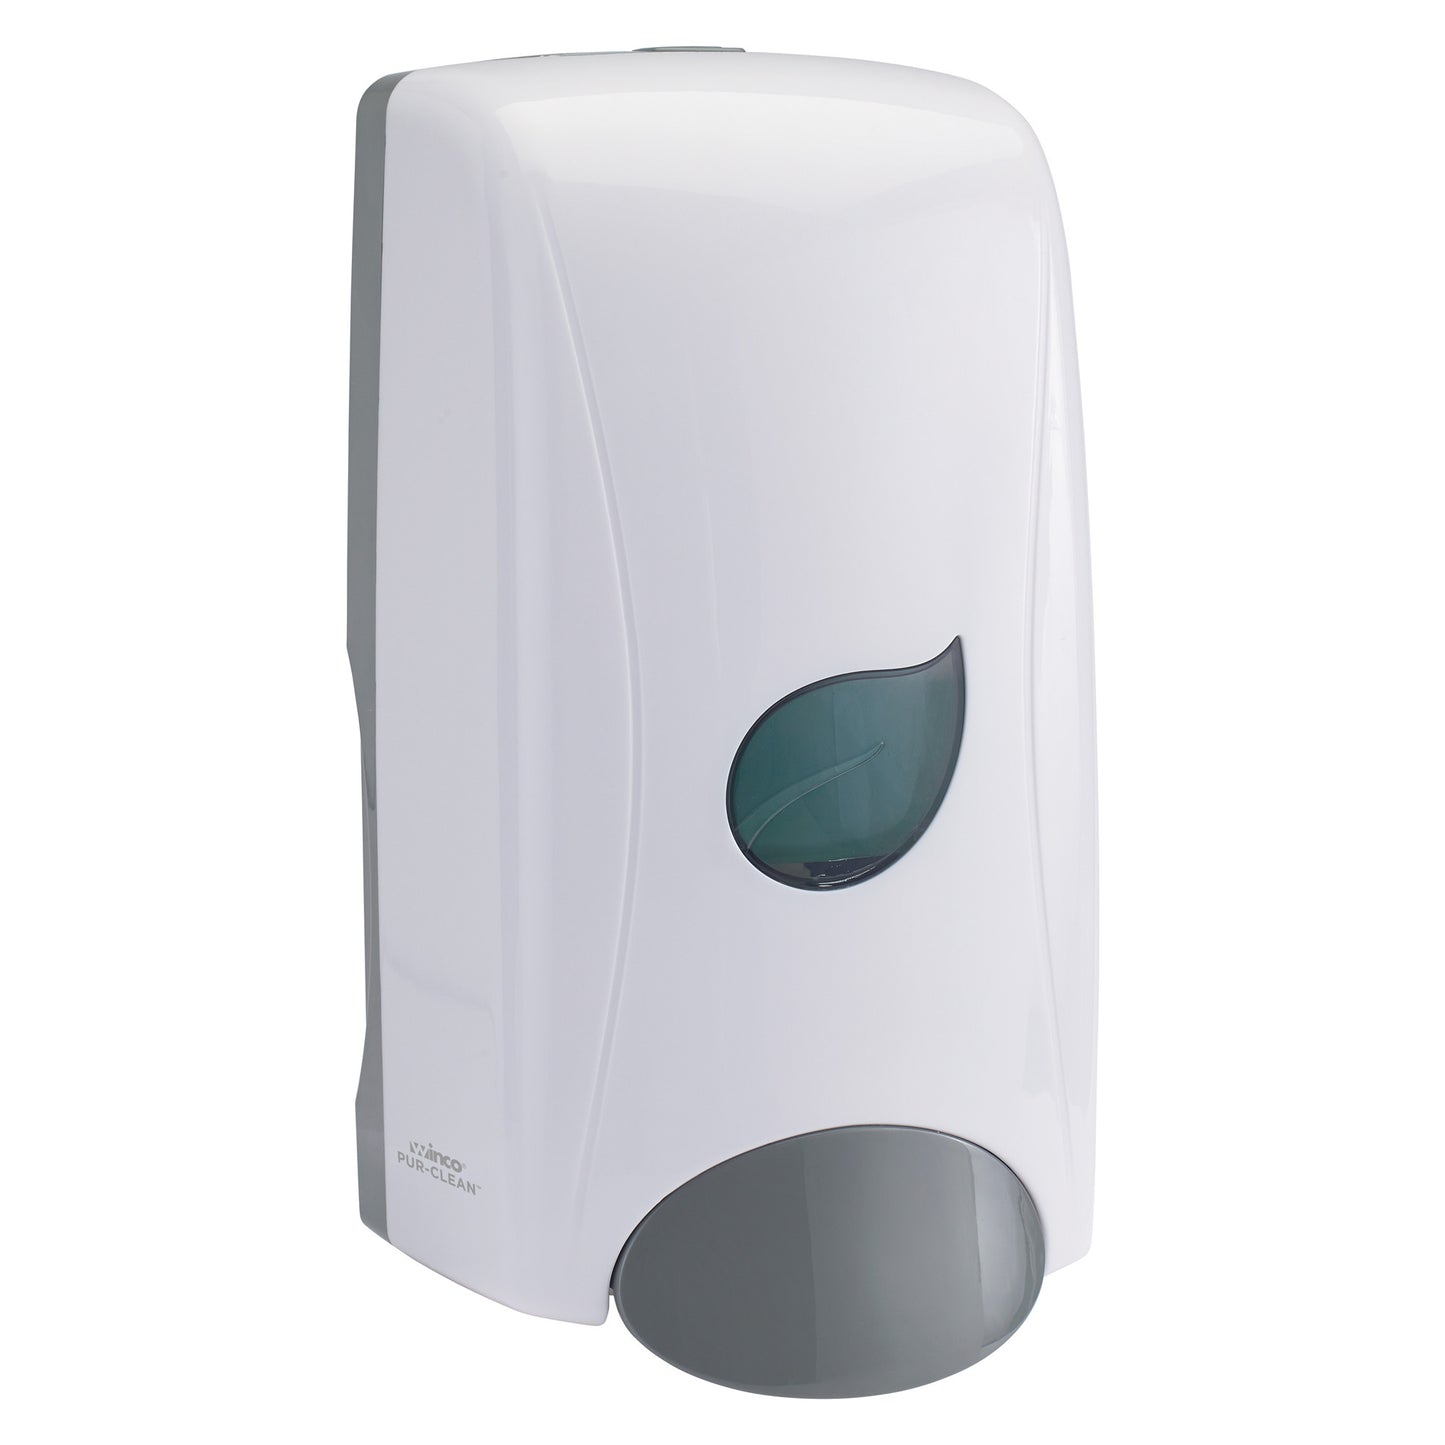 SDML-1W - Pur-Clean Manual Soap Dispenser, Liquid - White